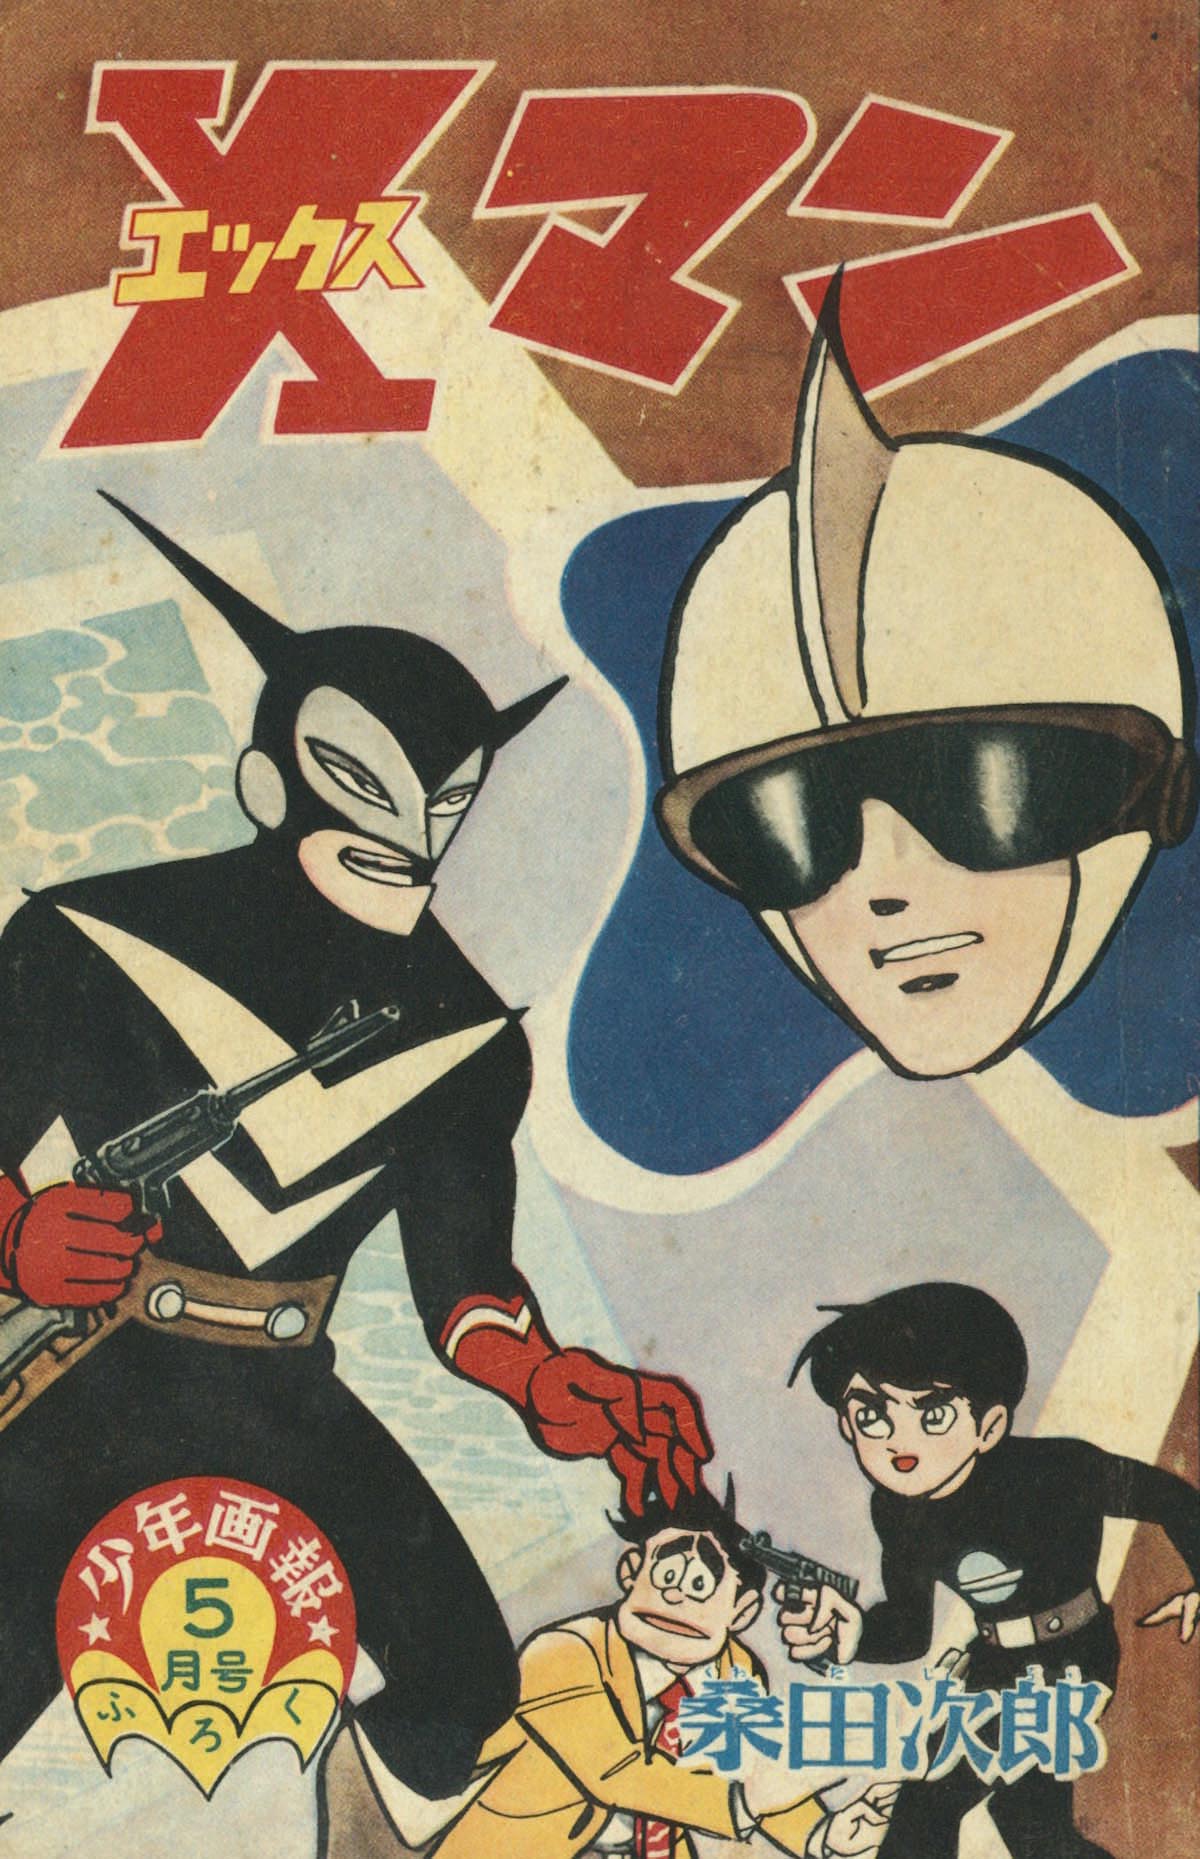 桑田次郎「Xマン」1962(S37)05ふろく